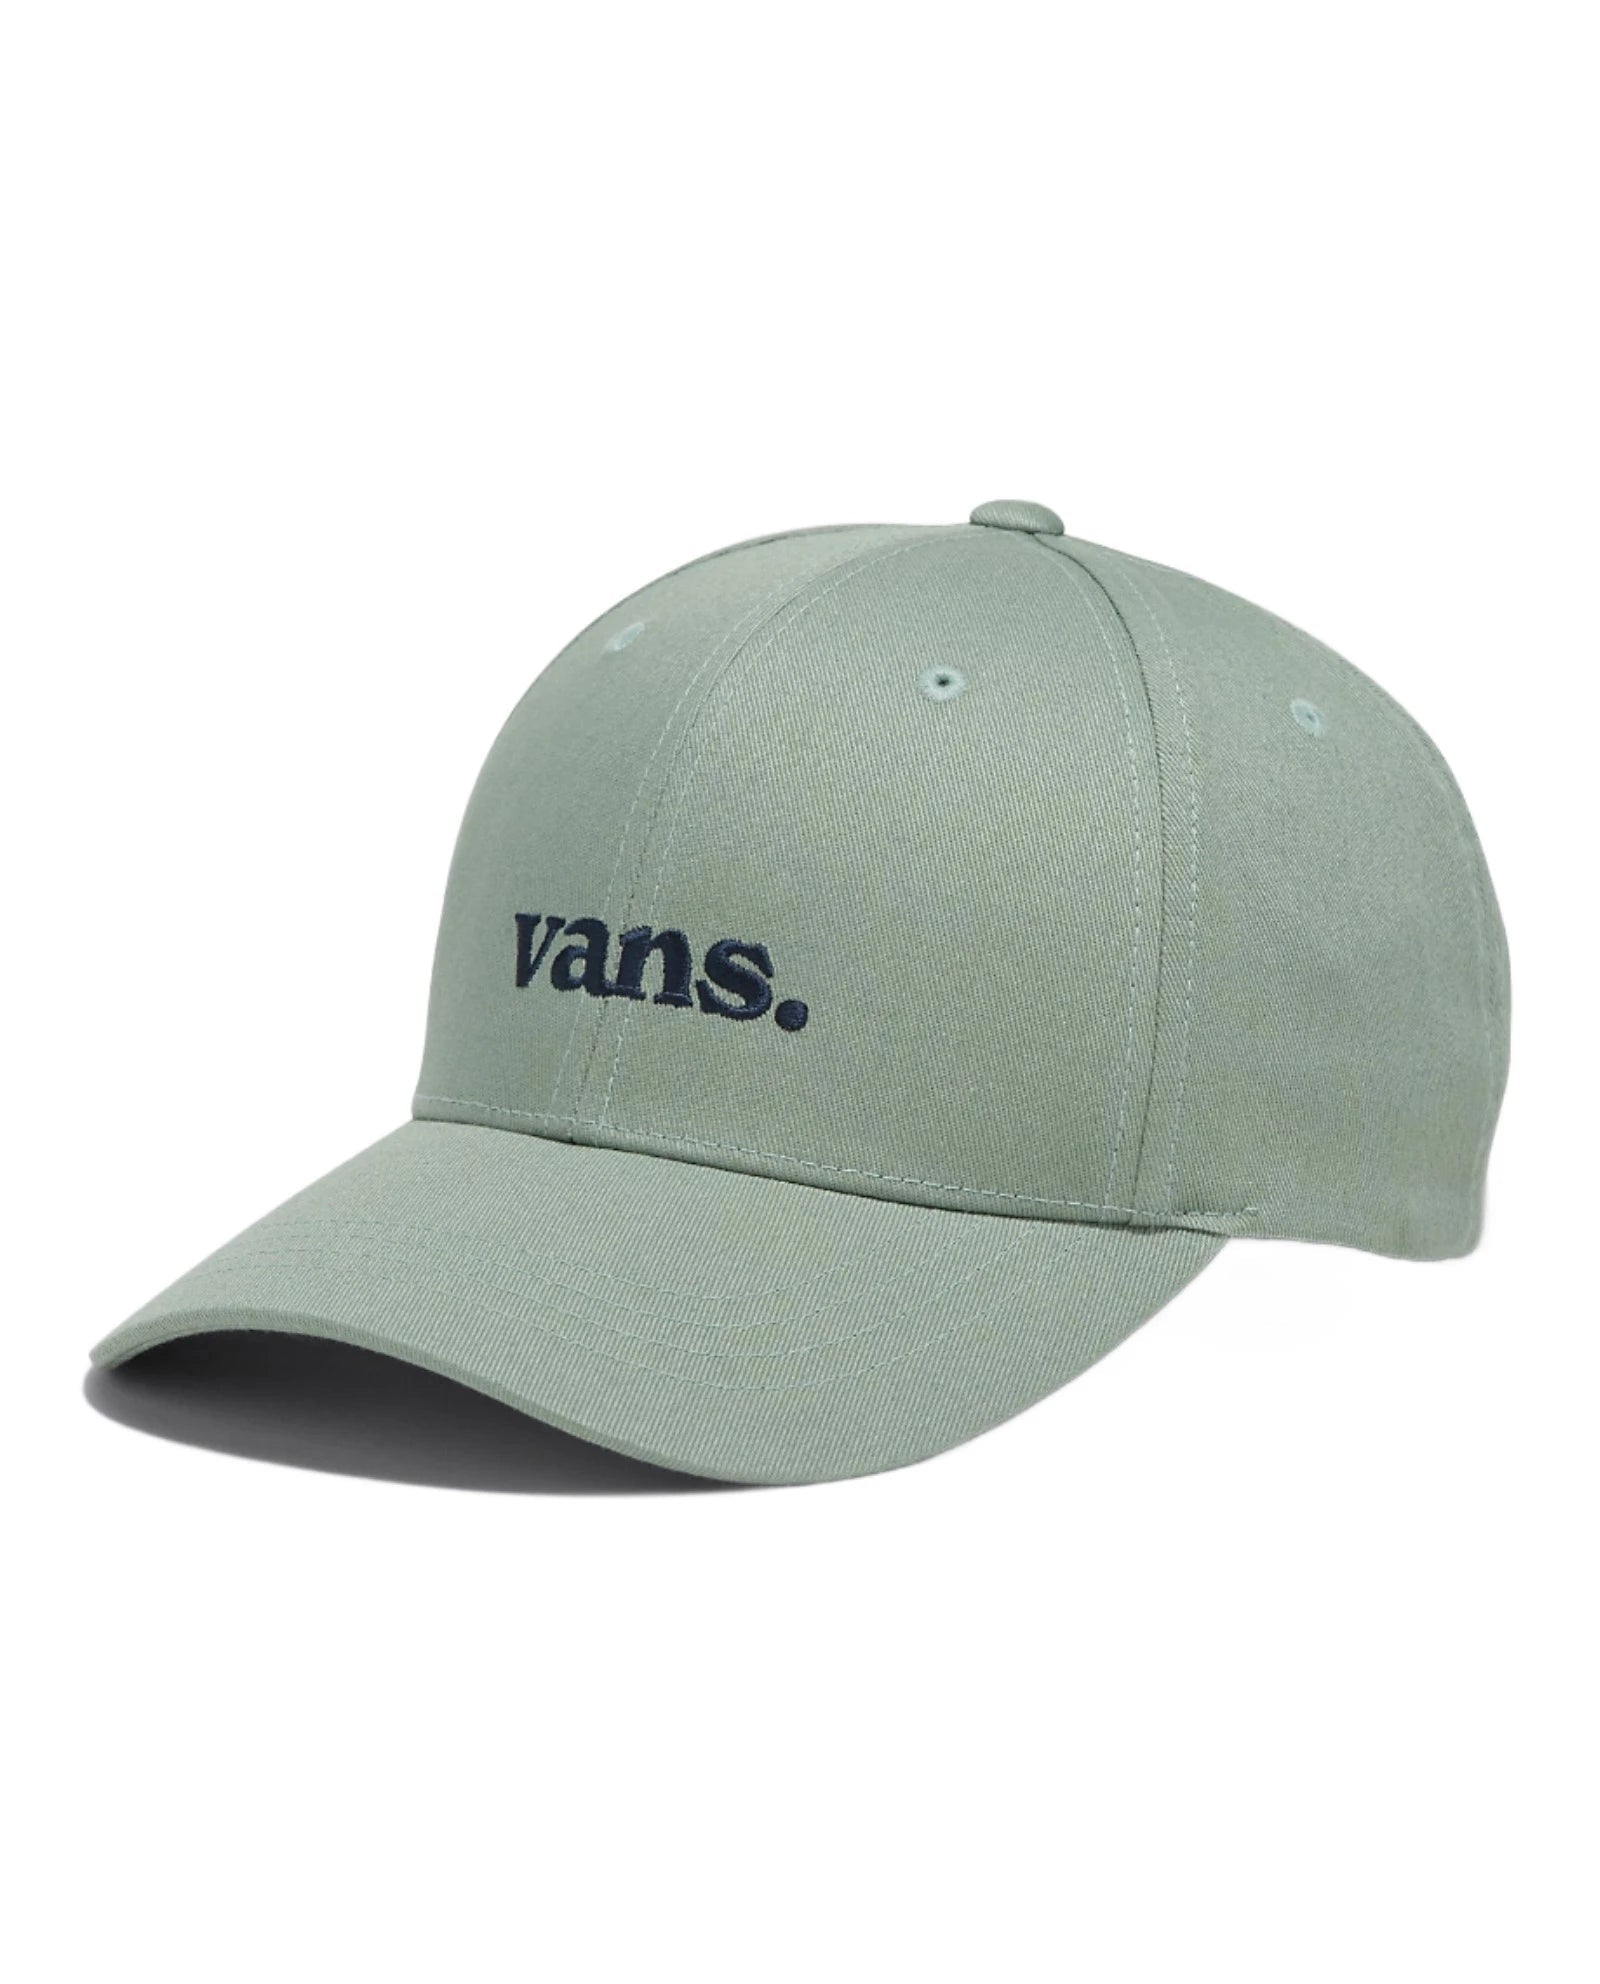 VANS Vans 66 Structured Jockey Hat Iceberg Green Men's Hats Vans 